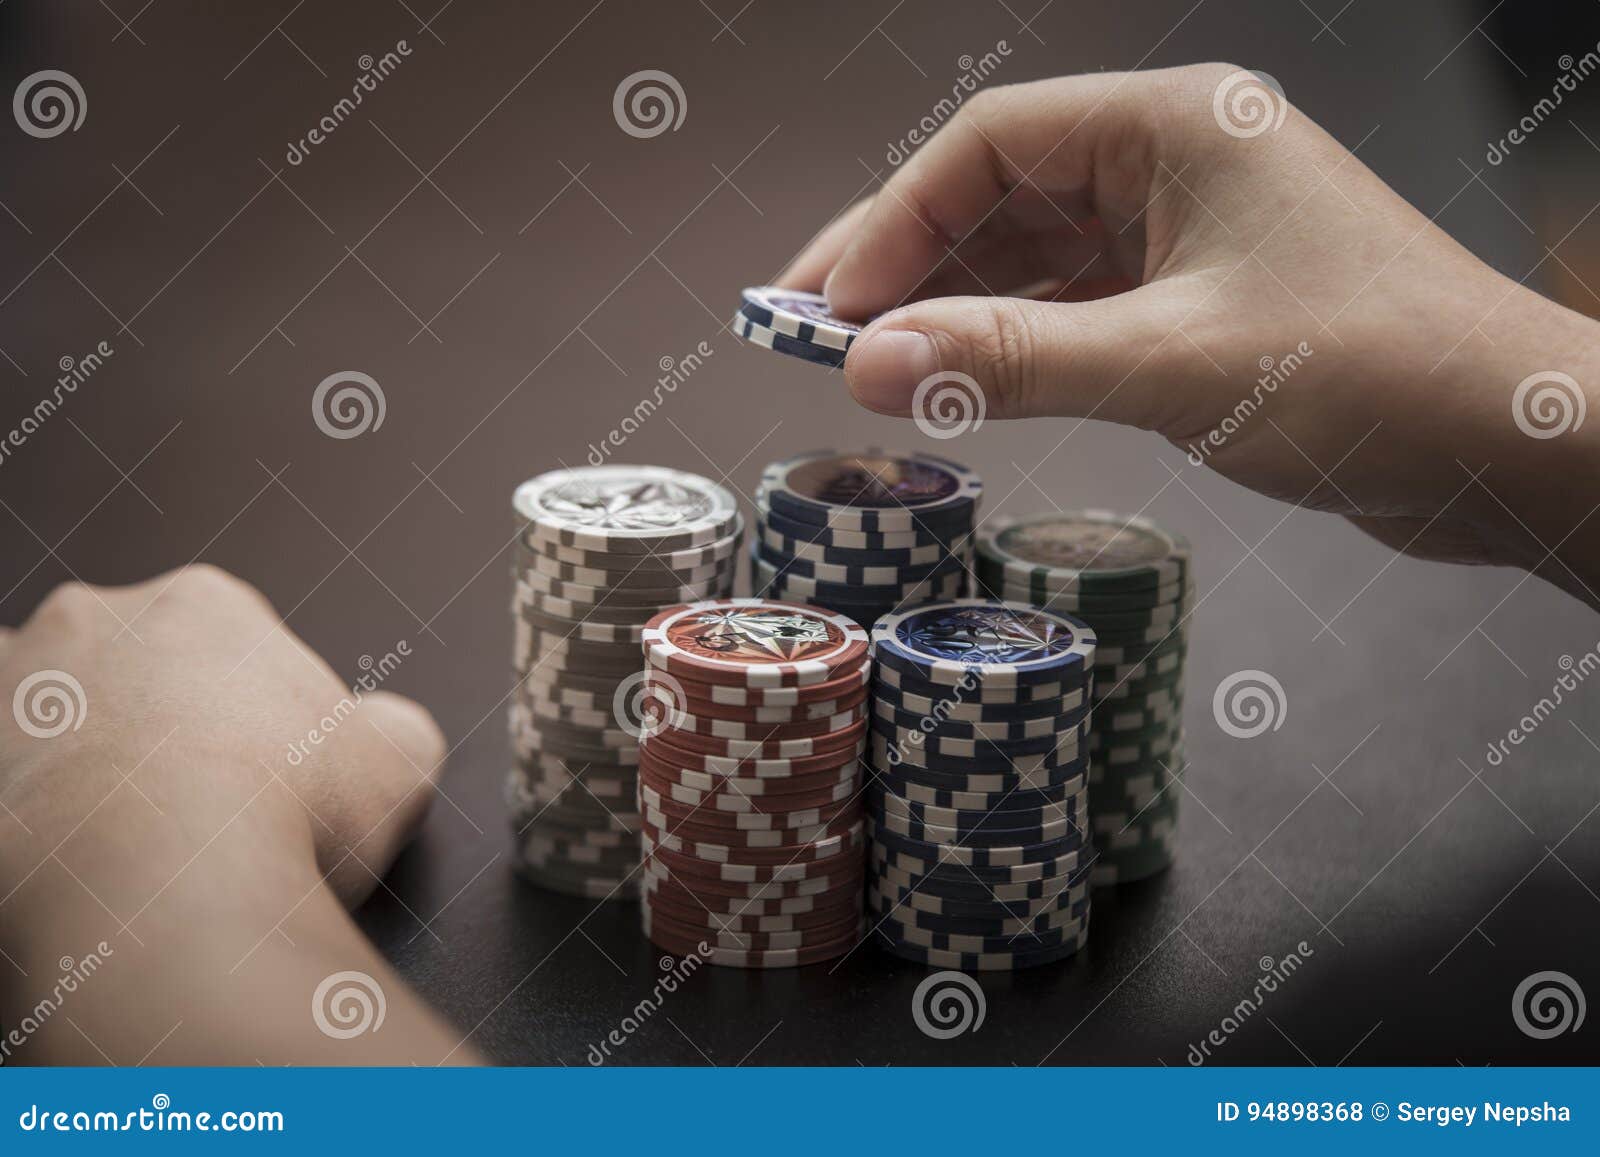 brian kenny poker